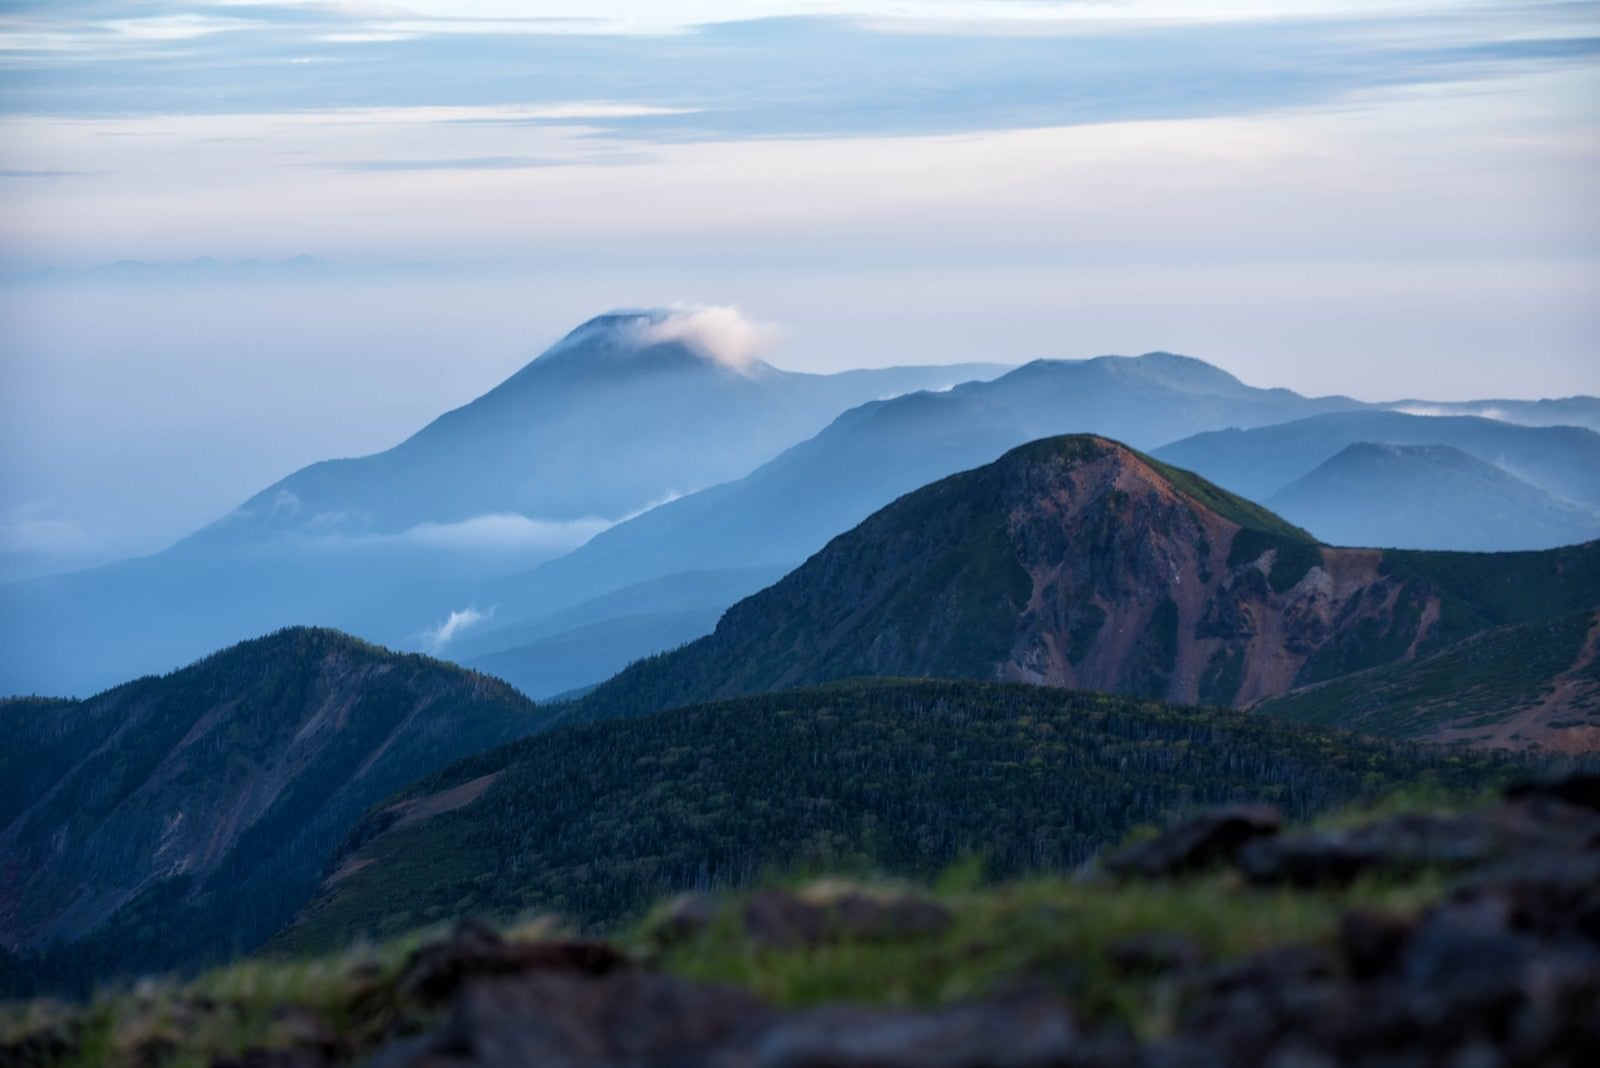 「霞がかり雲のかかる蓼科山と」の写真